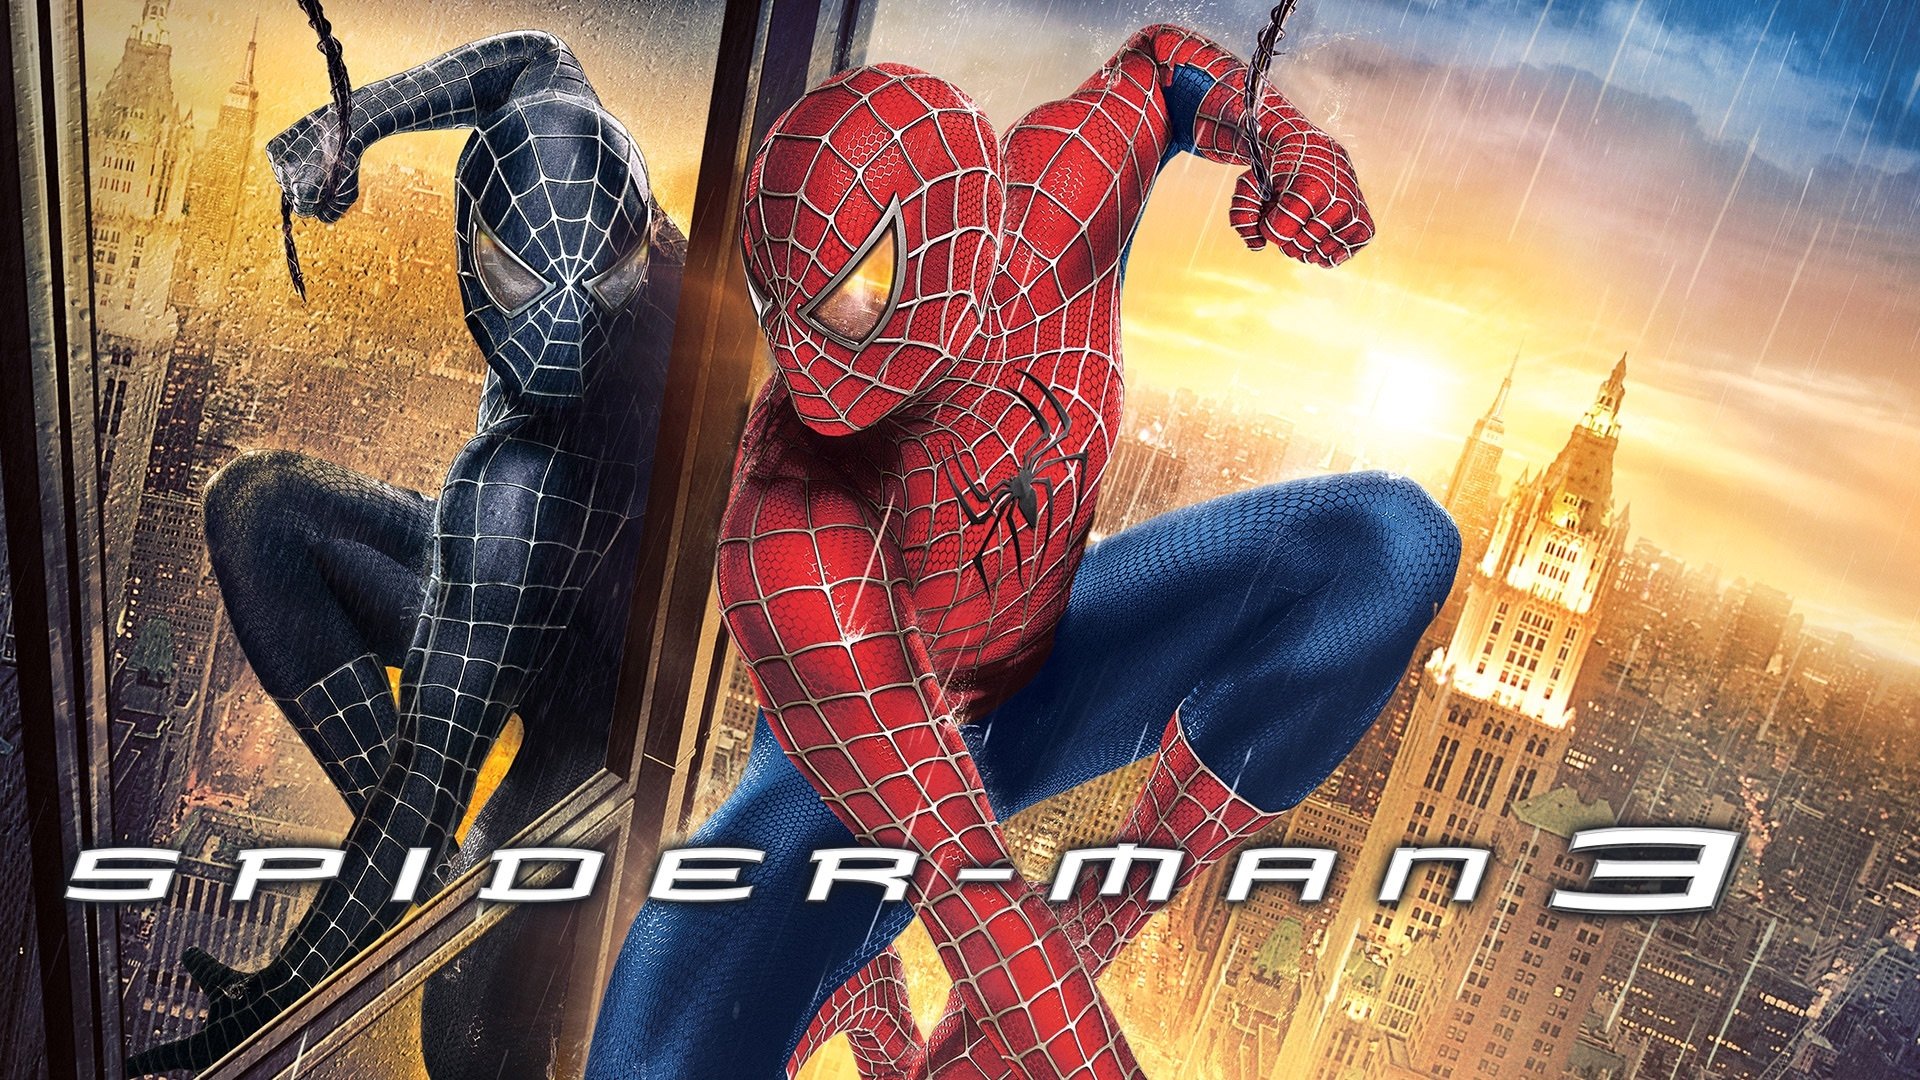 1920x1080 Spider-Man 3 Wallpaper Background Image. 